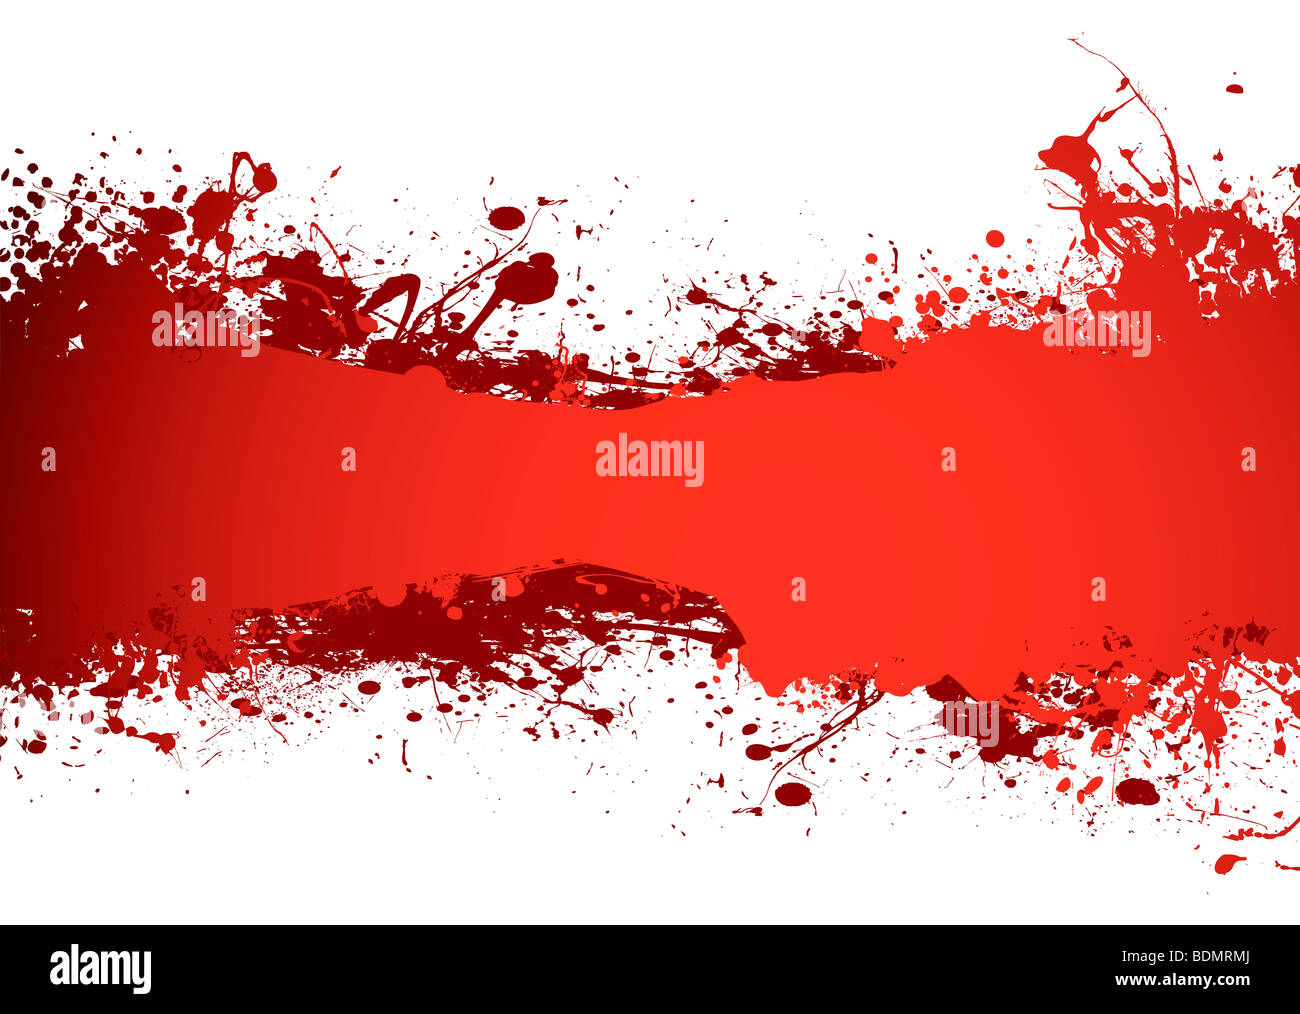 Rojo sangre de tinta grunge banner con espacio para añadir su propia copia  Fotografía de stock - Alamy